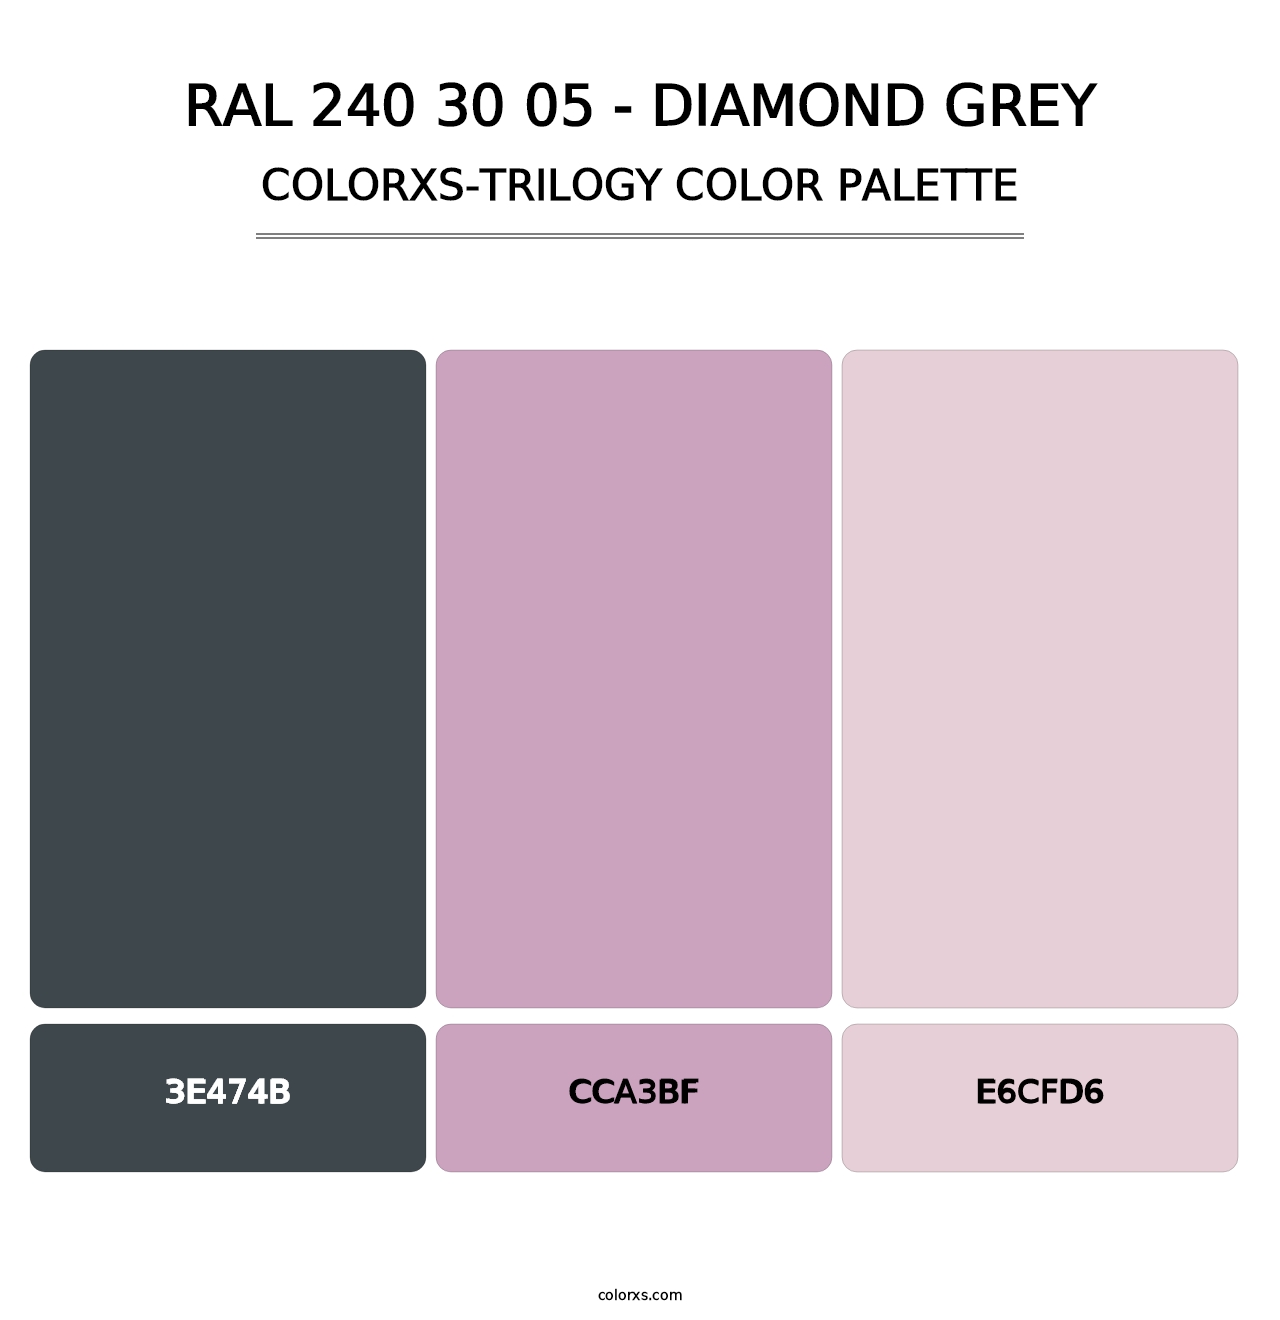 RAL 240 30 05 - Diamond Grey - Colorxs Trilogy Palette